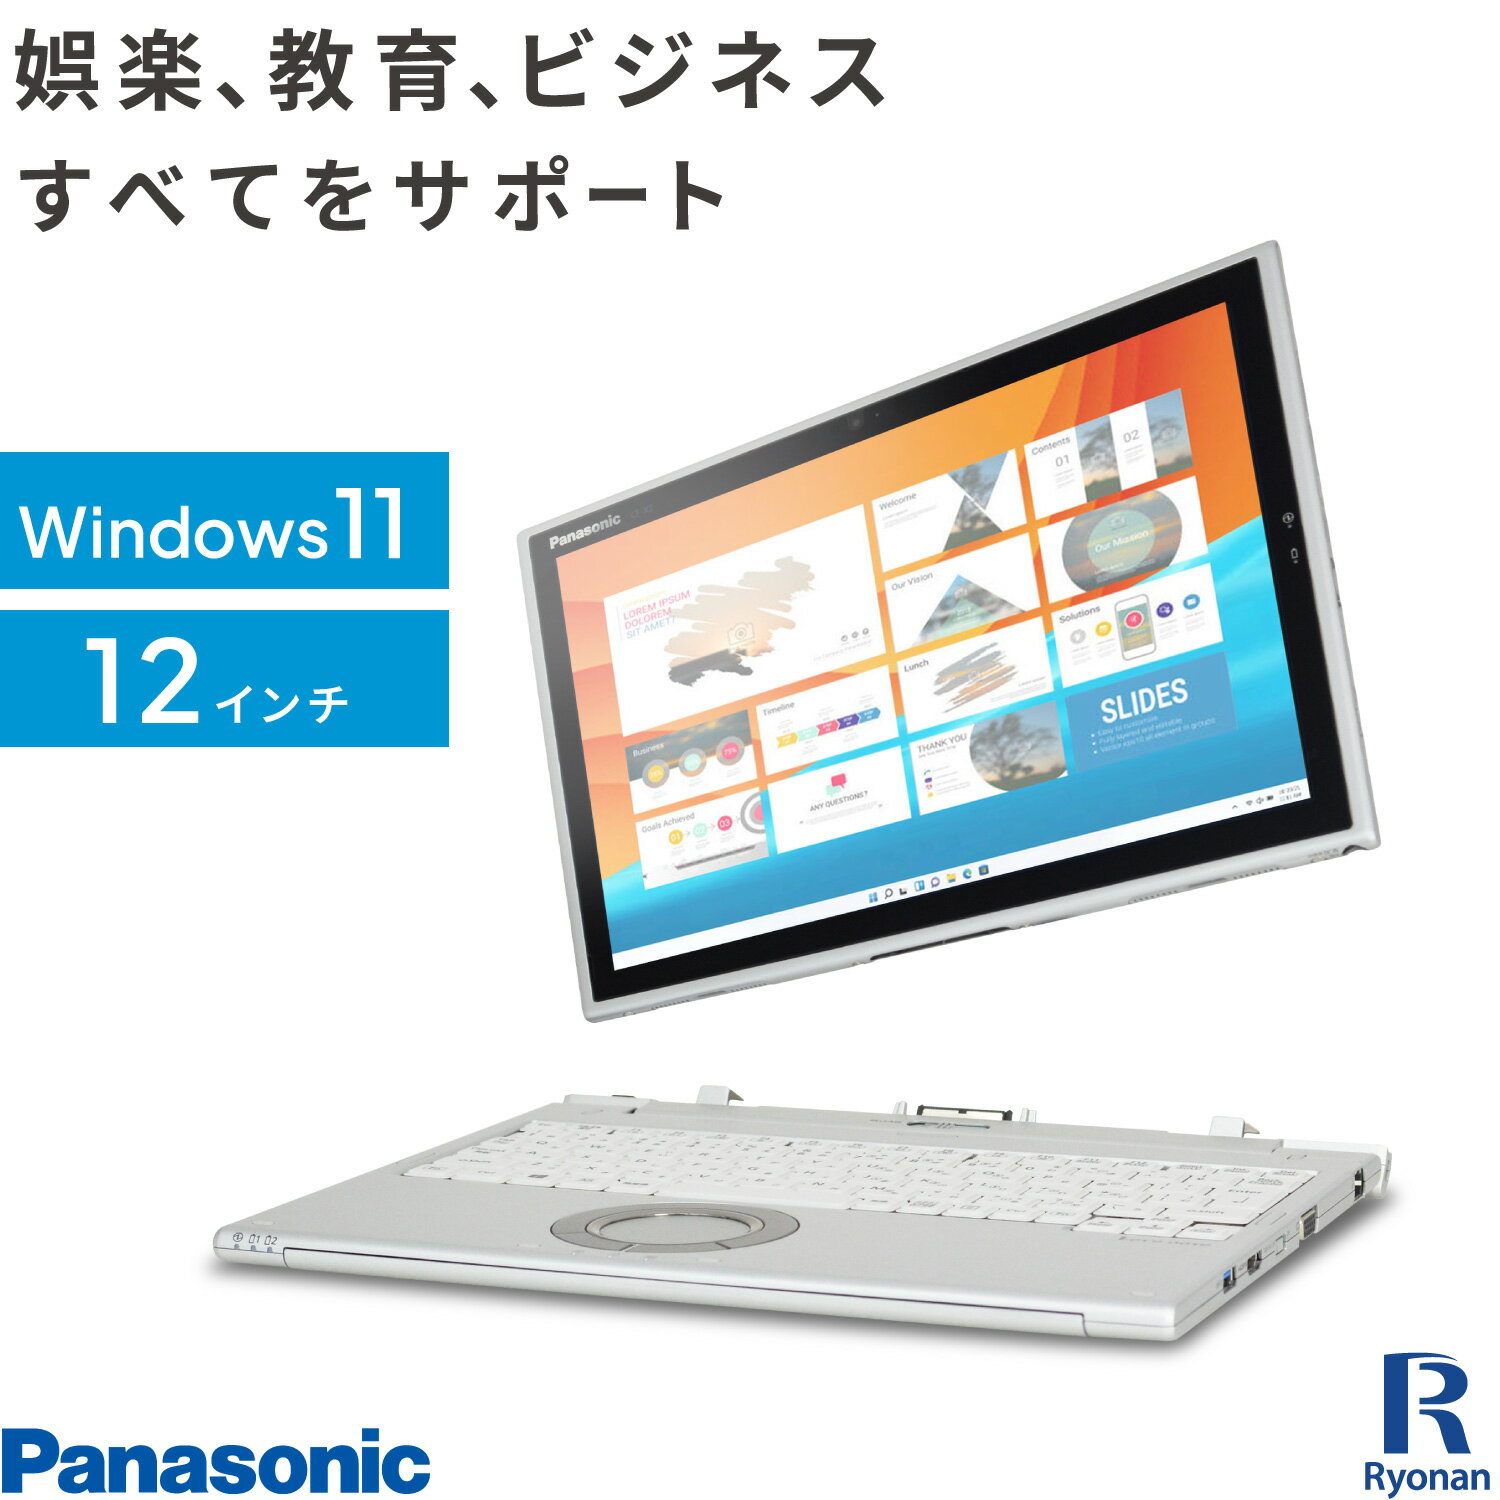 【WEBカメラ / 専用キーボード 付】Panasonic レッツノート CF-XZ6 第7世代 Core i5 メモリ:8GB 新品 M.2 SSD:512GB タブレット 12インチ 2in1 解像度 2160 1440 タッチパネル HDMI 無線LAN Of…